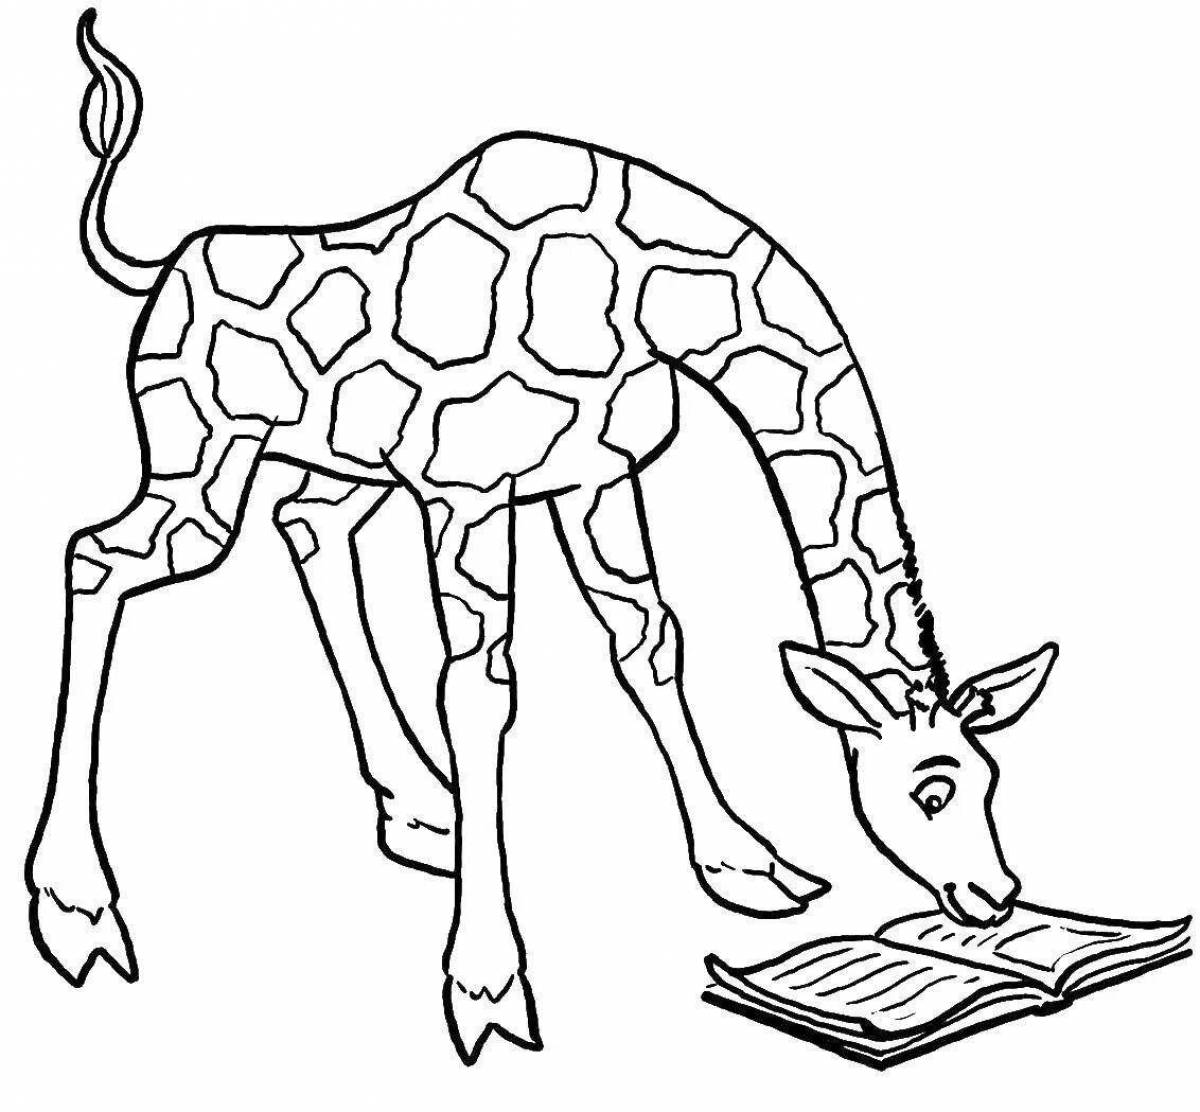 Grand giraffe coloring page